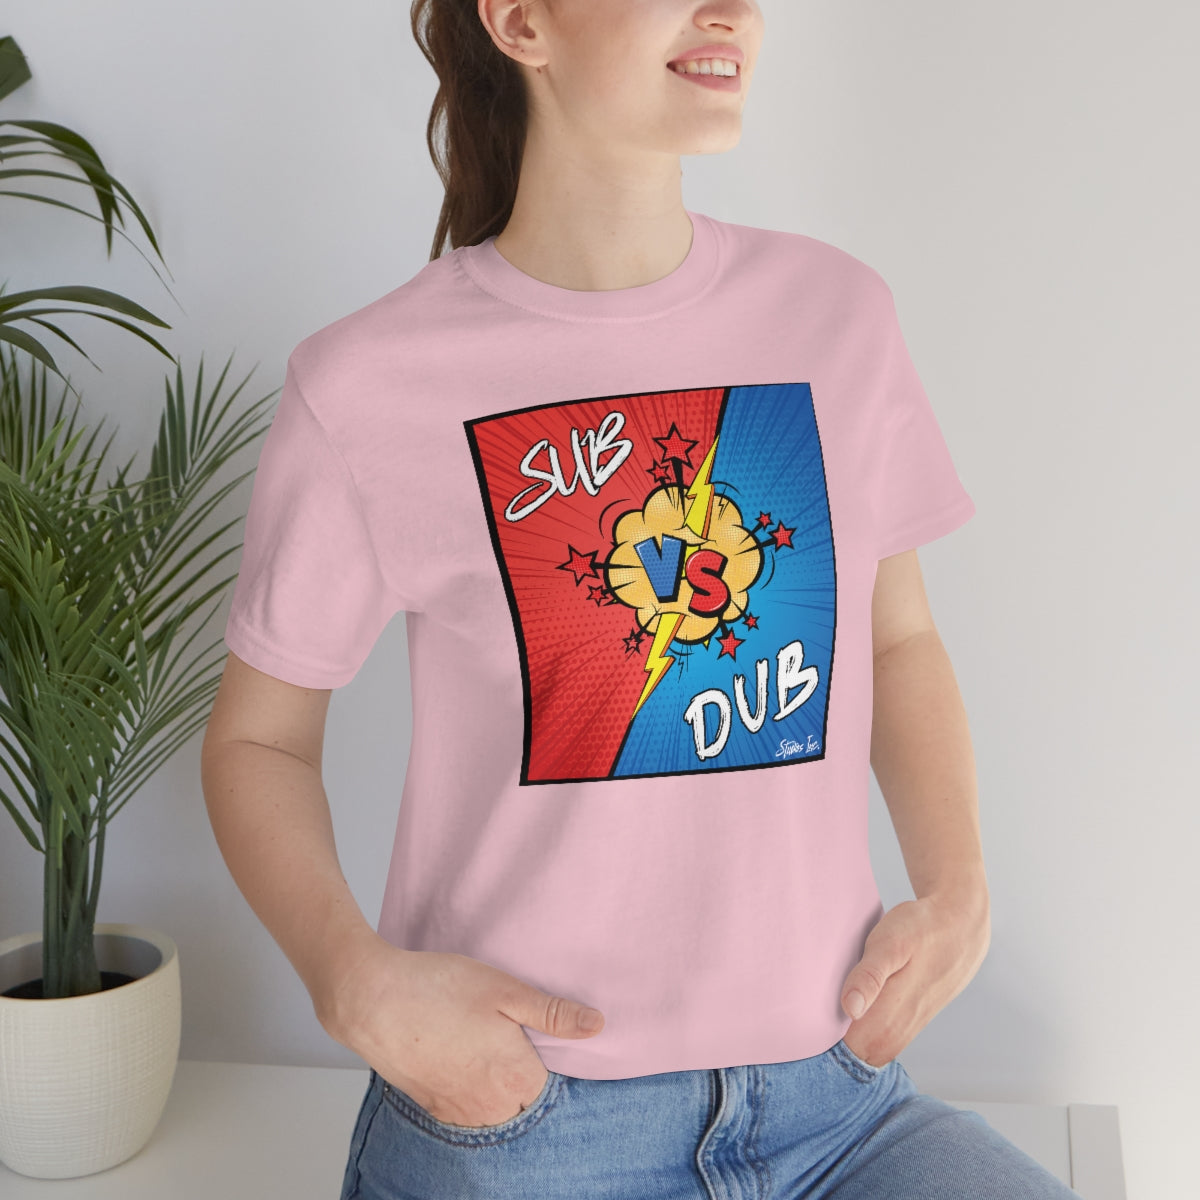 Sub vs Dub Official Logo